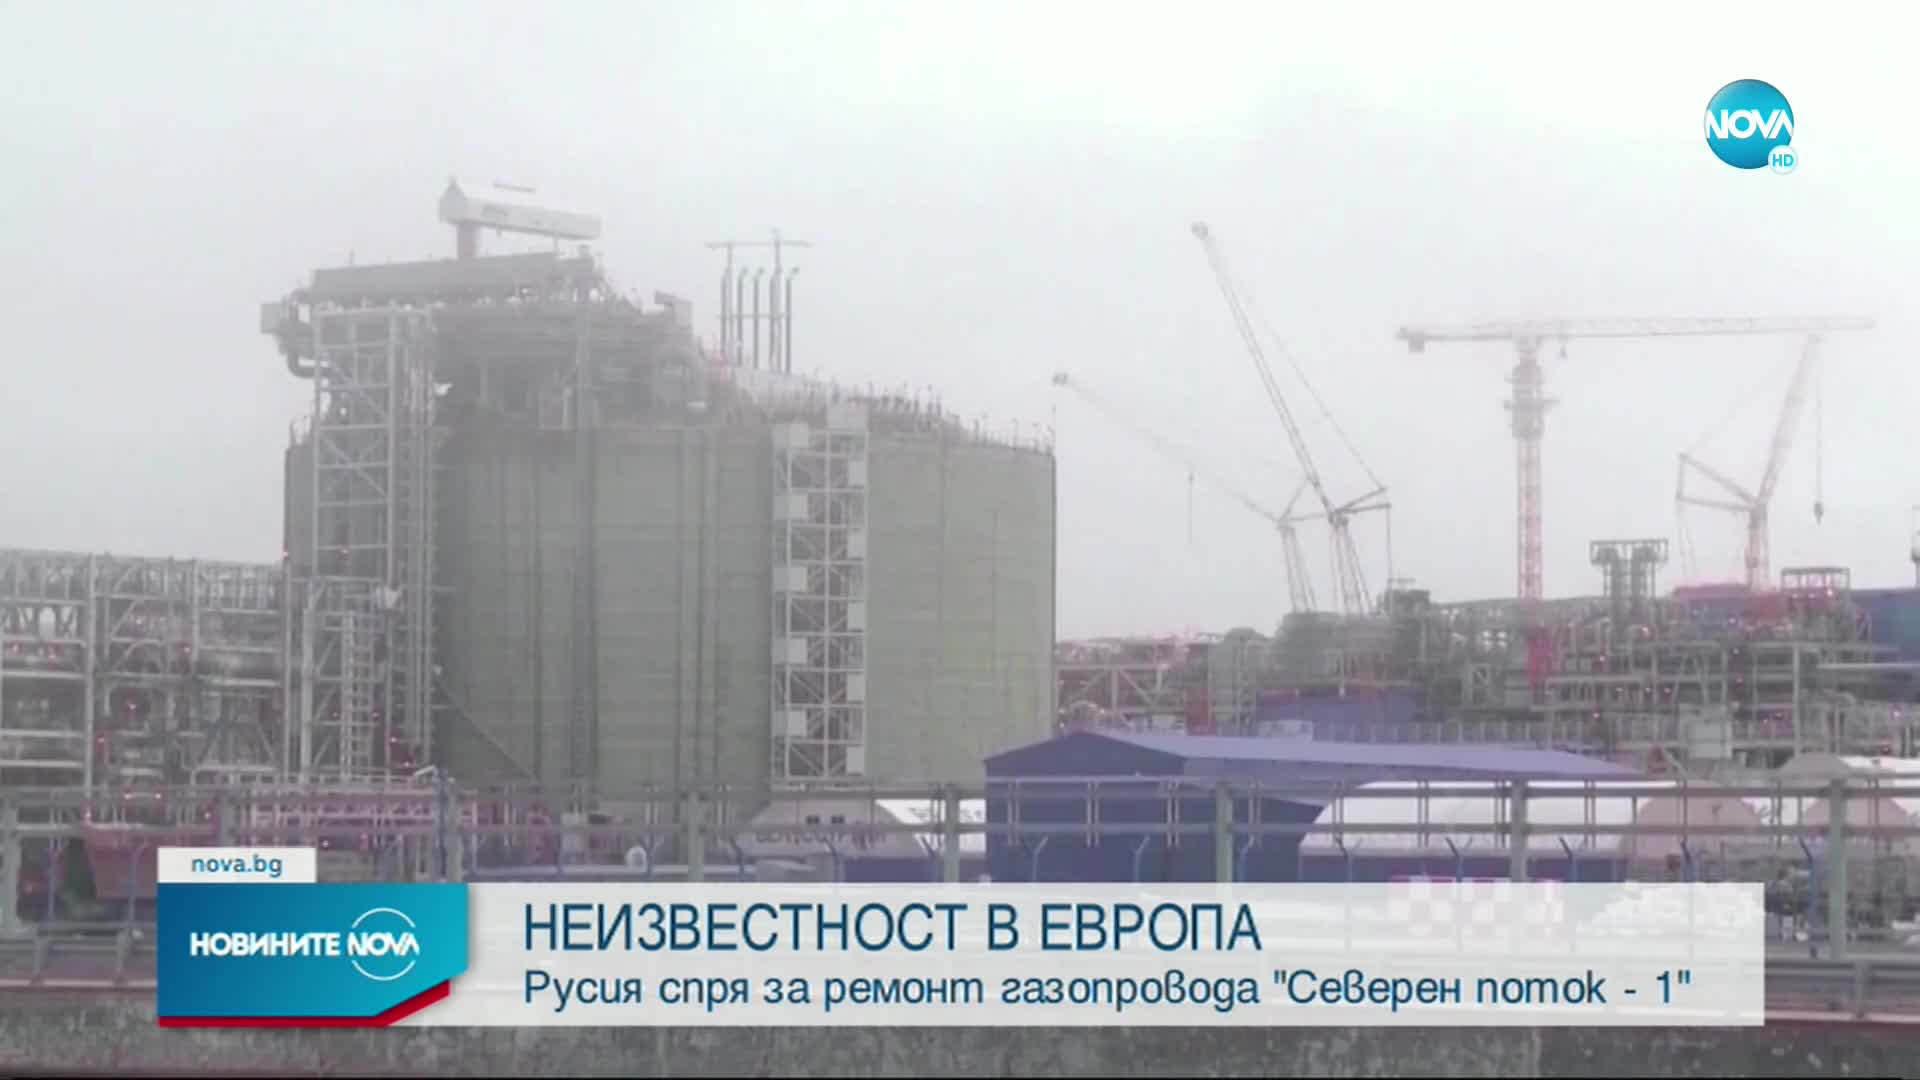 Доставките на руски газ към Германия спират за 10 дни